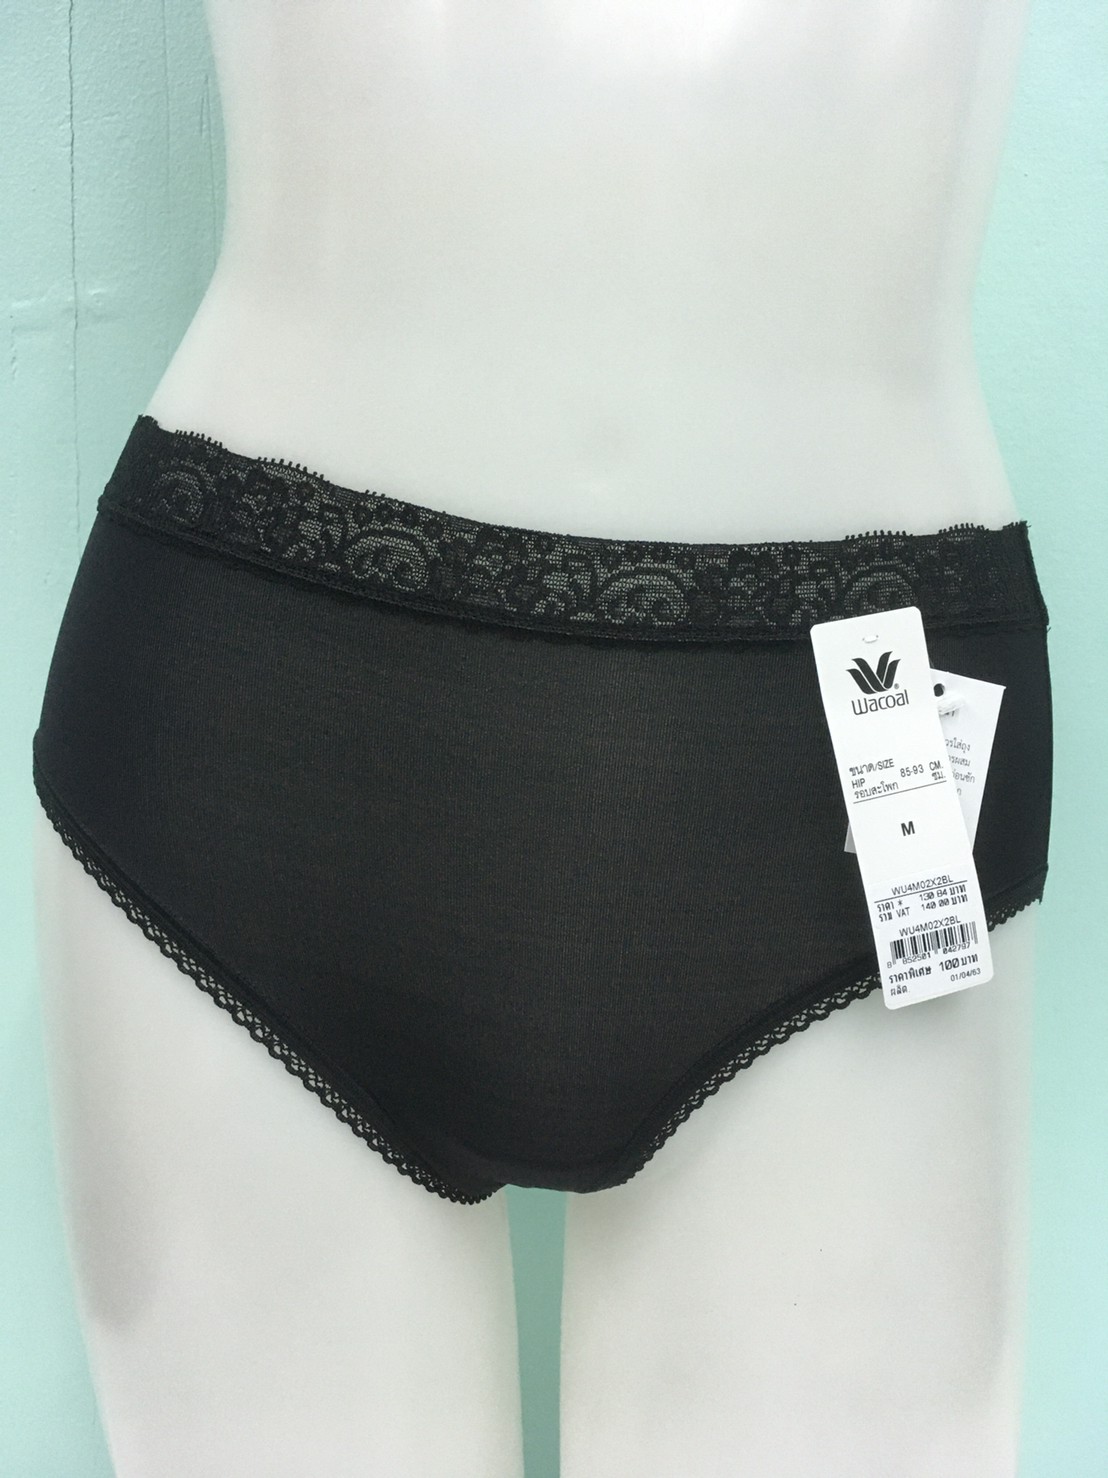 Wacoal Panty กางเกงใน ทรงเต็มตัว ขอบลูกไม้ สีดำ (1 ตัว) กางเกงในผู้หญิง กางเกงในหญิง ผู้หญิง วาโก้ เต็มตัว บาง เย็นสบาย รุ่น WU4M02